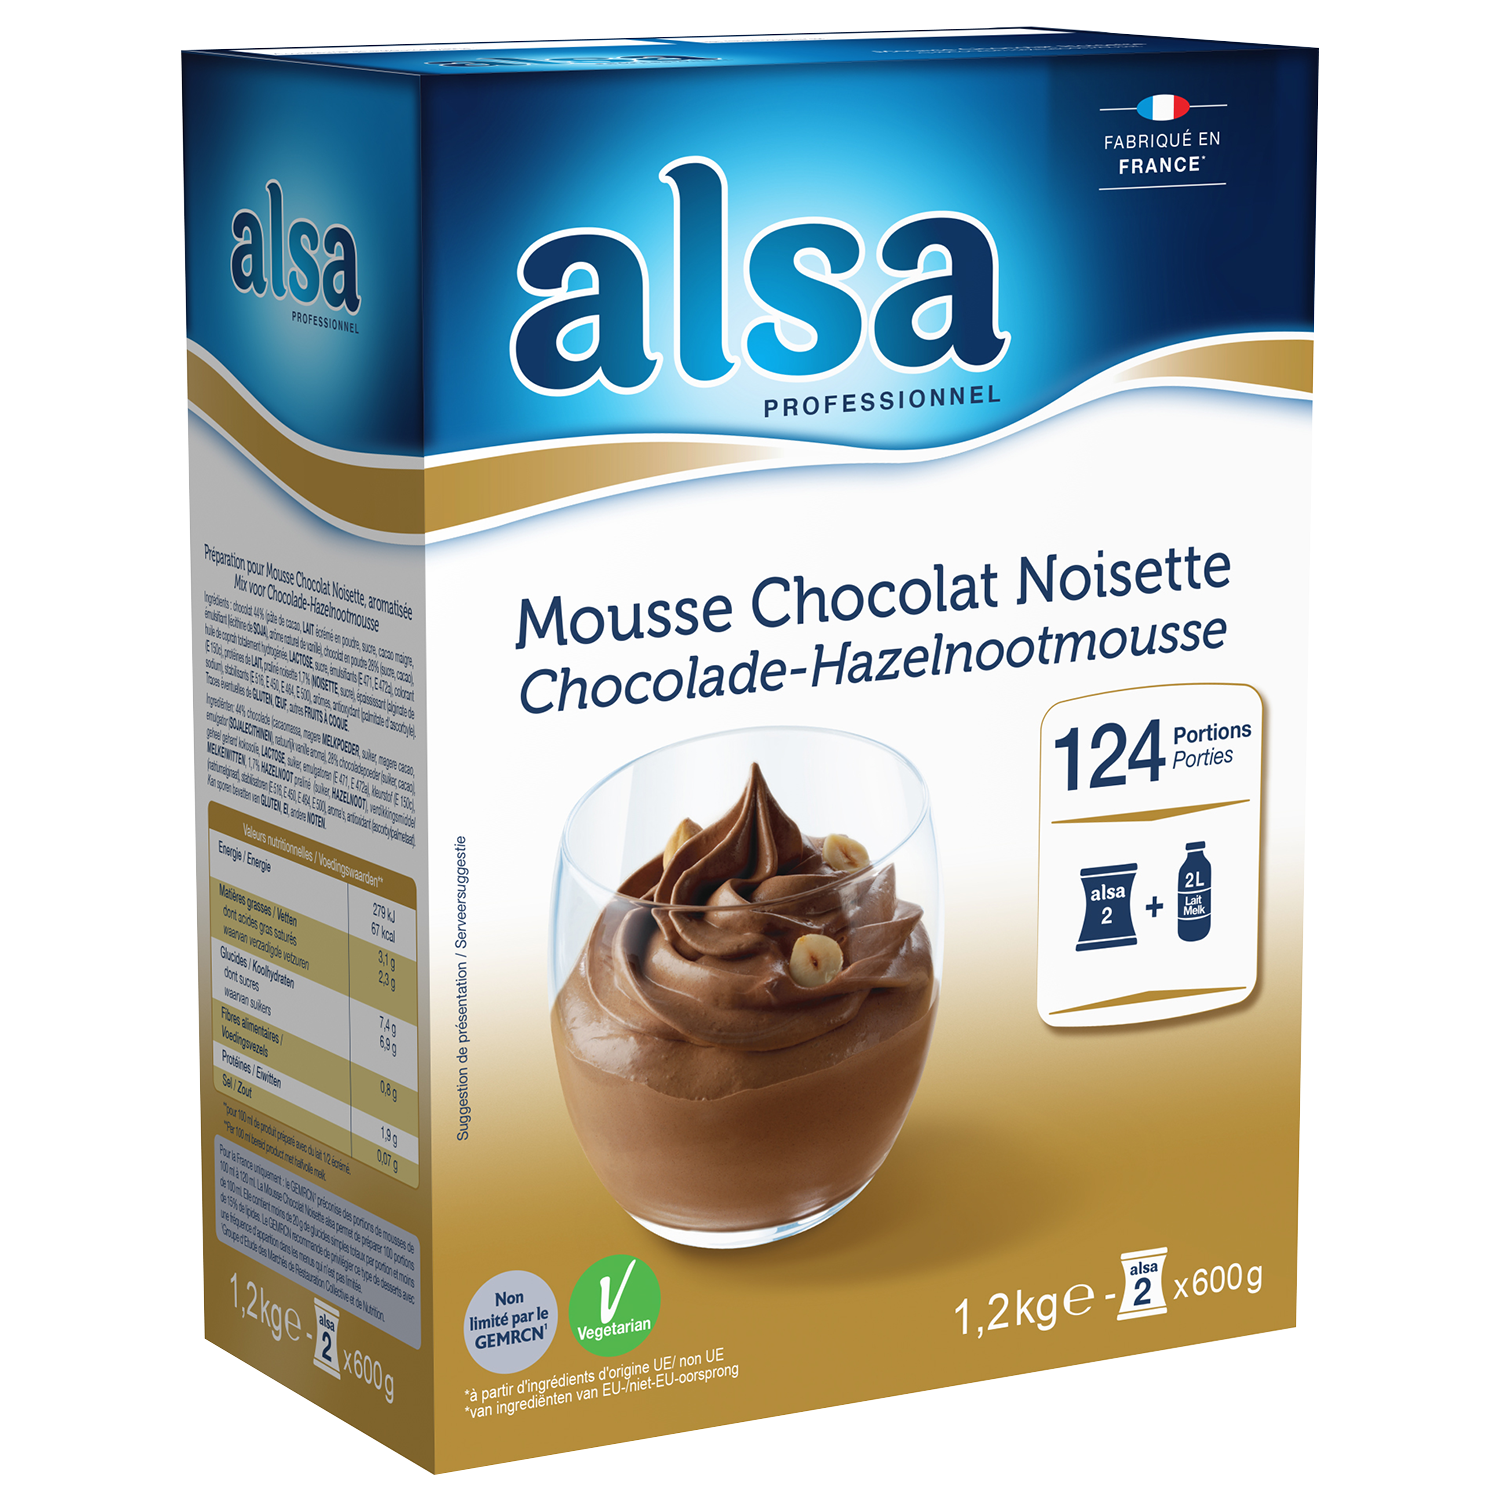 Mousse Chocolat Noisette